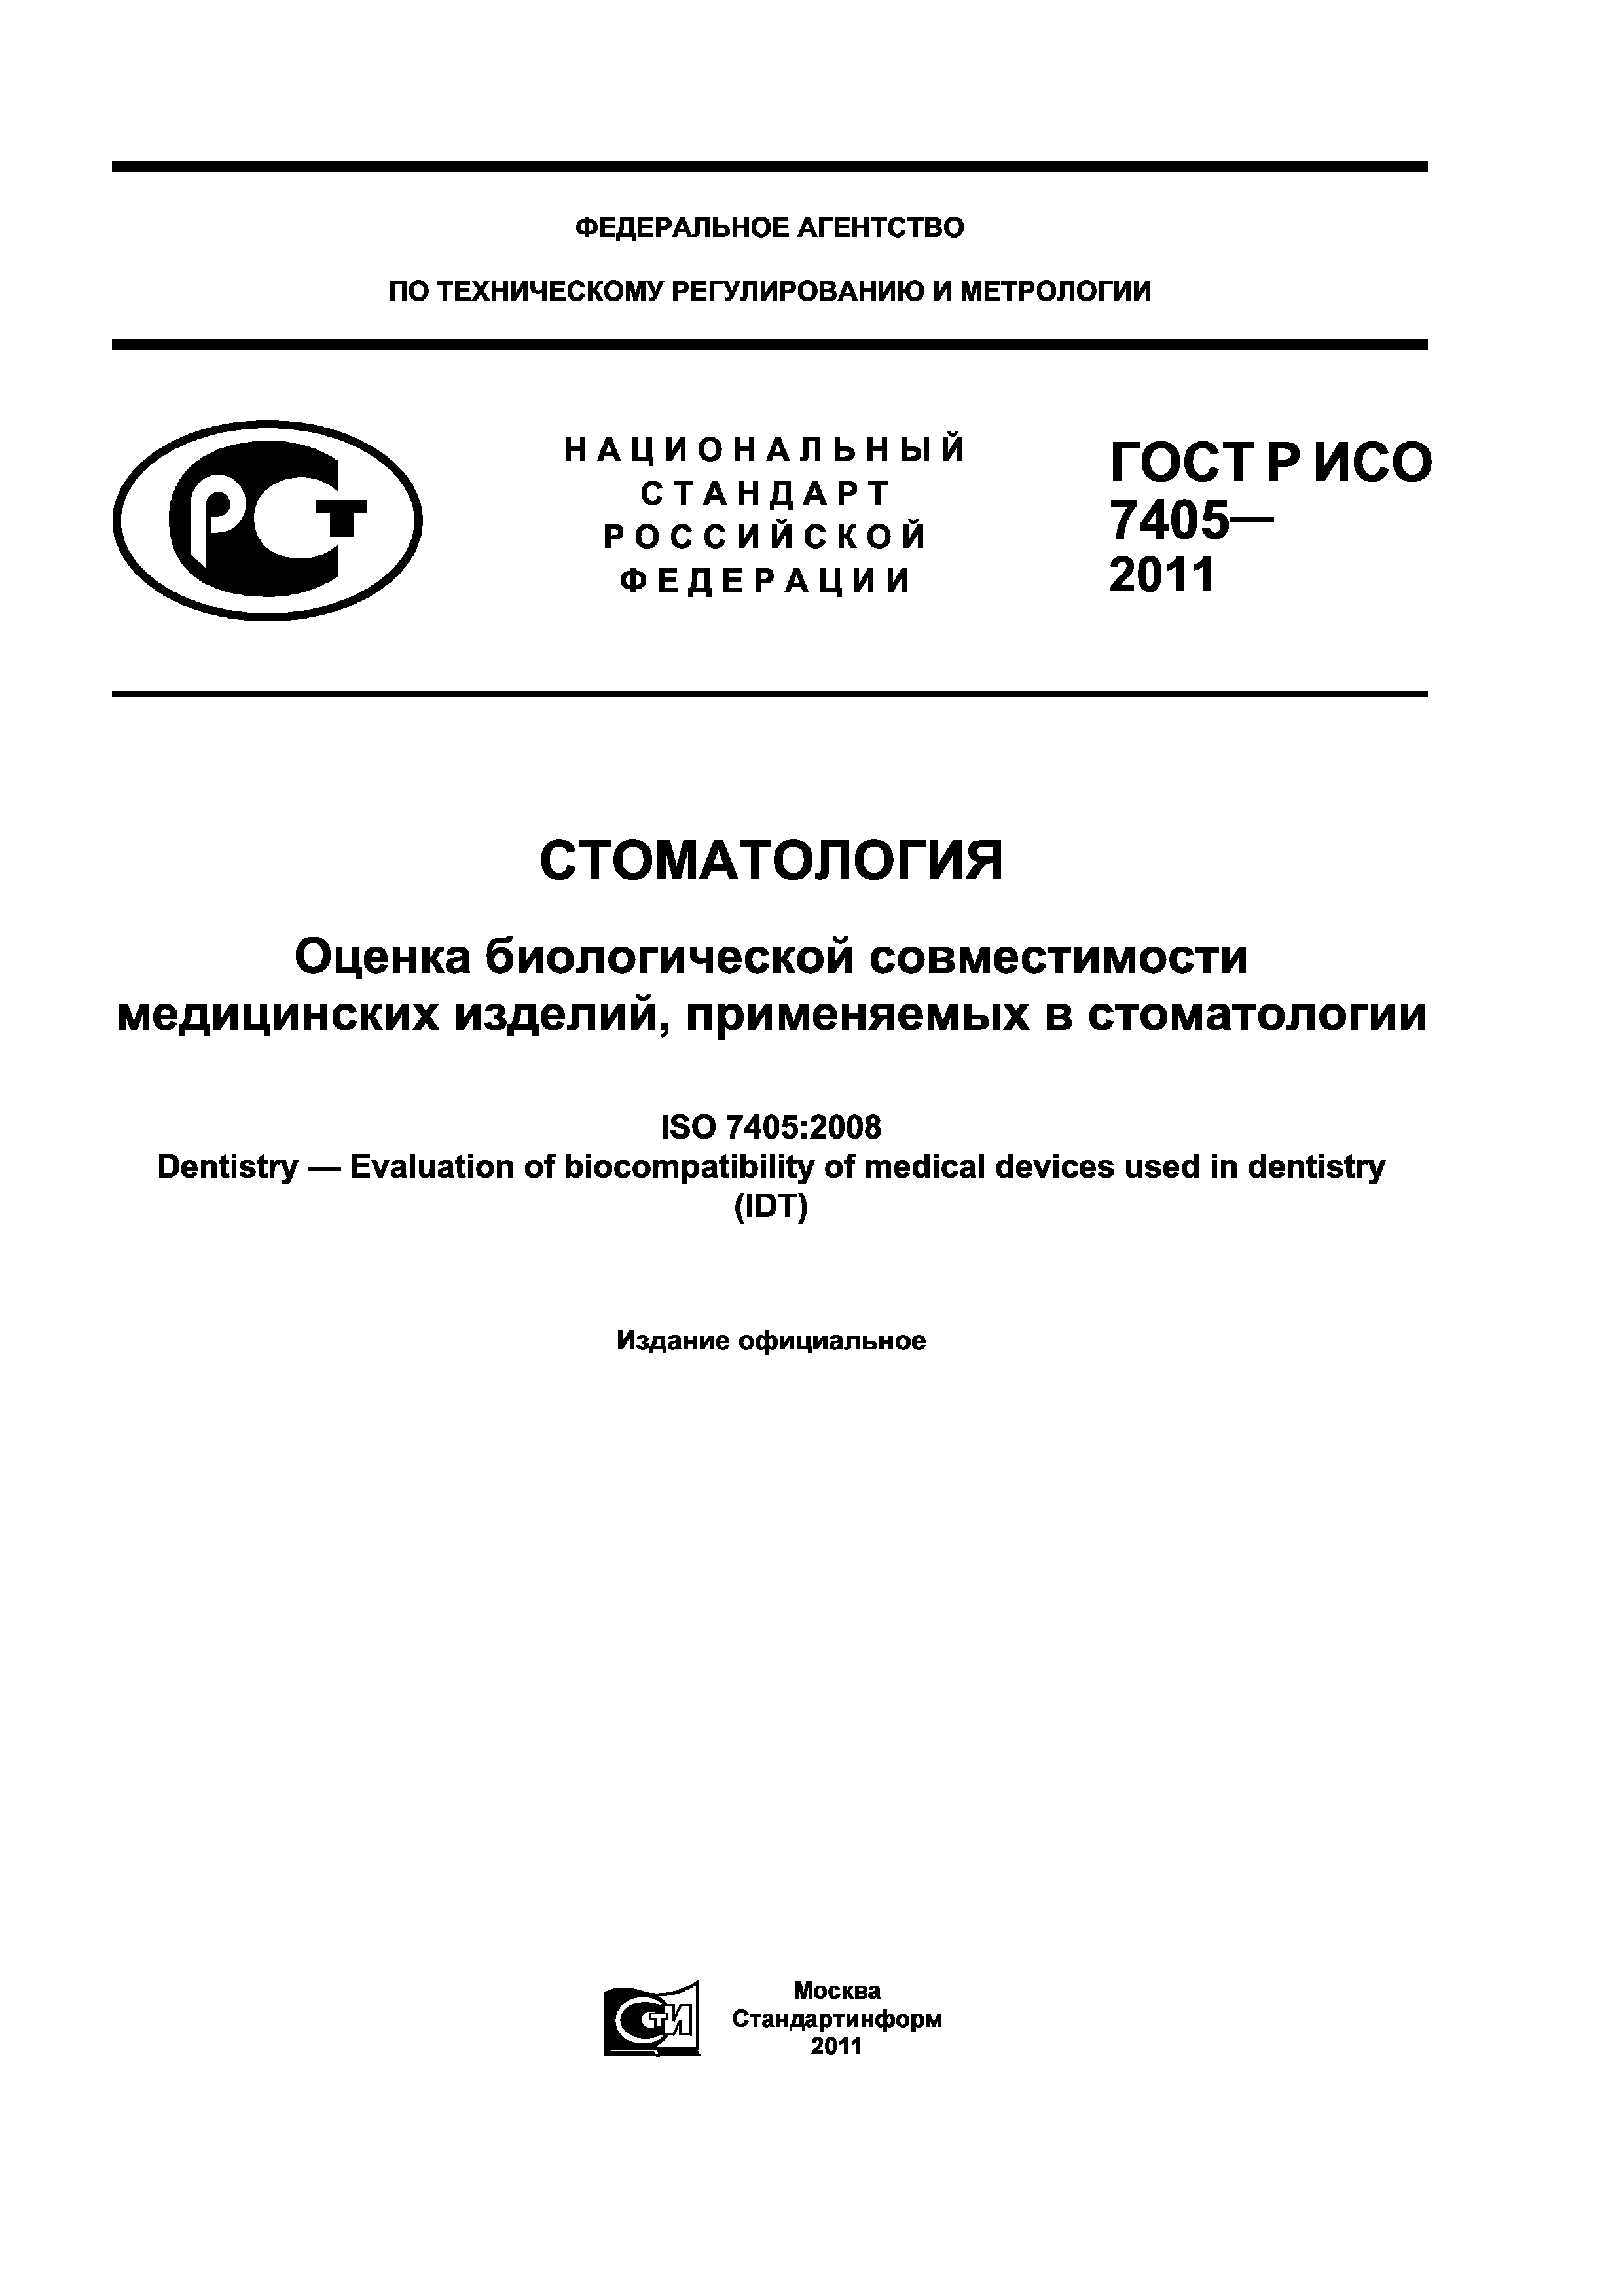 ГОСТ Р ИСО 7405-2011